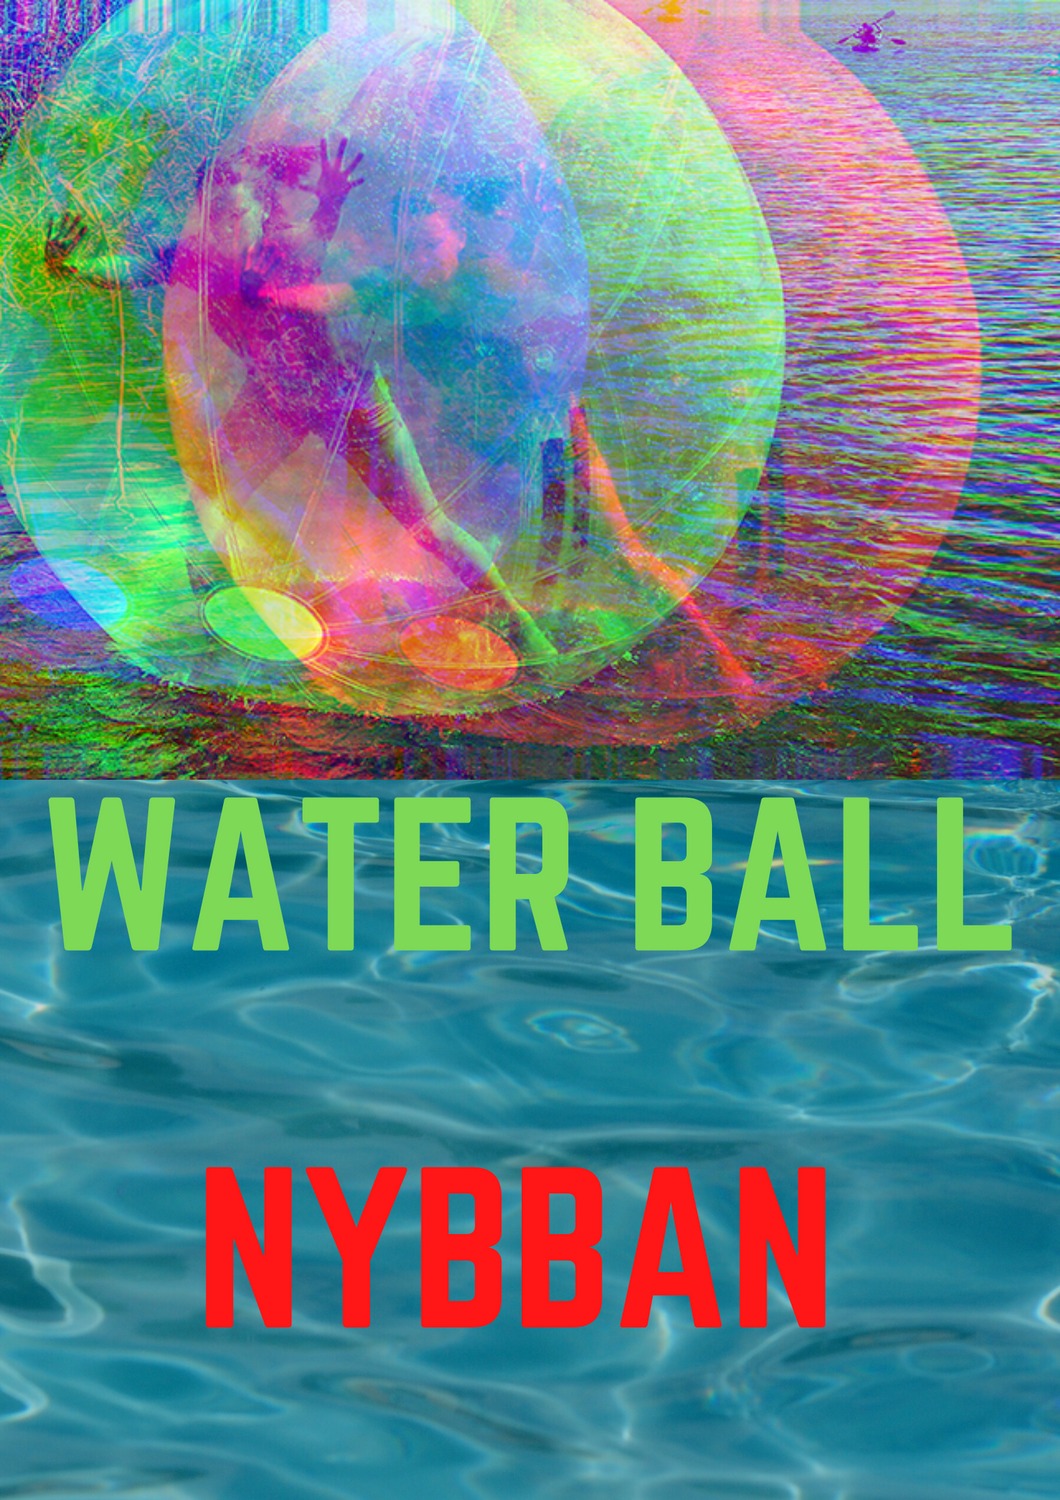 waterball nyborgstjärn lets go arvidsjaur